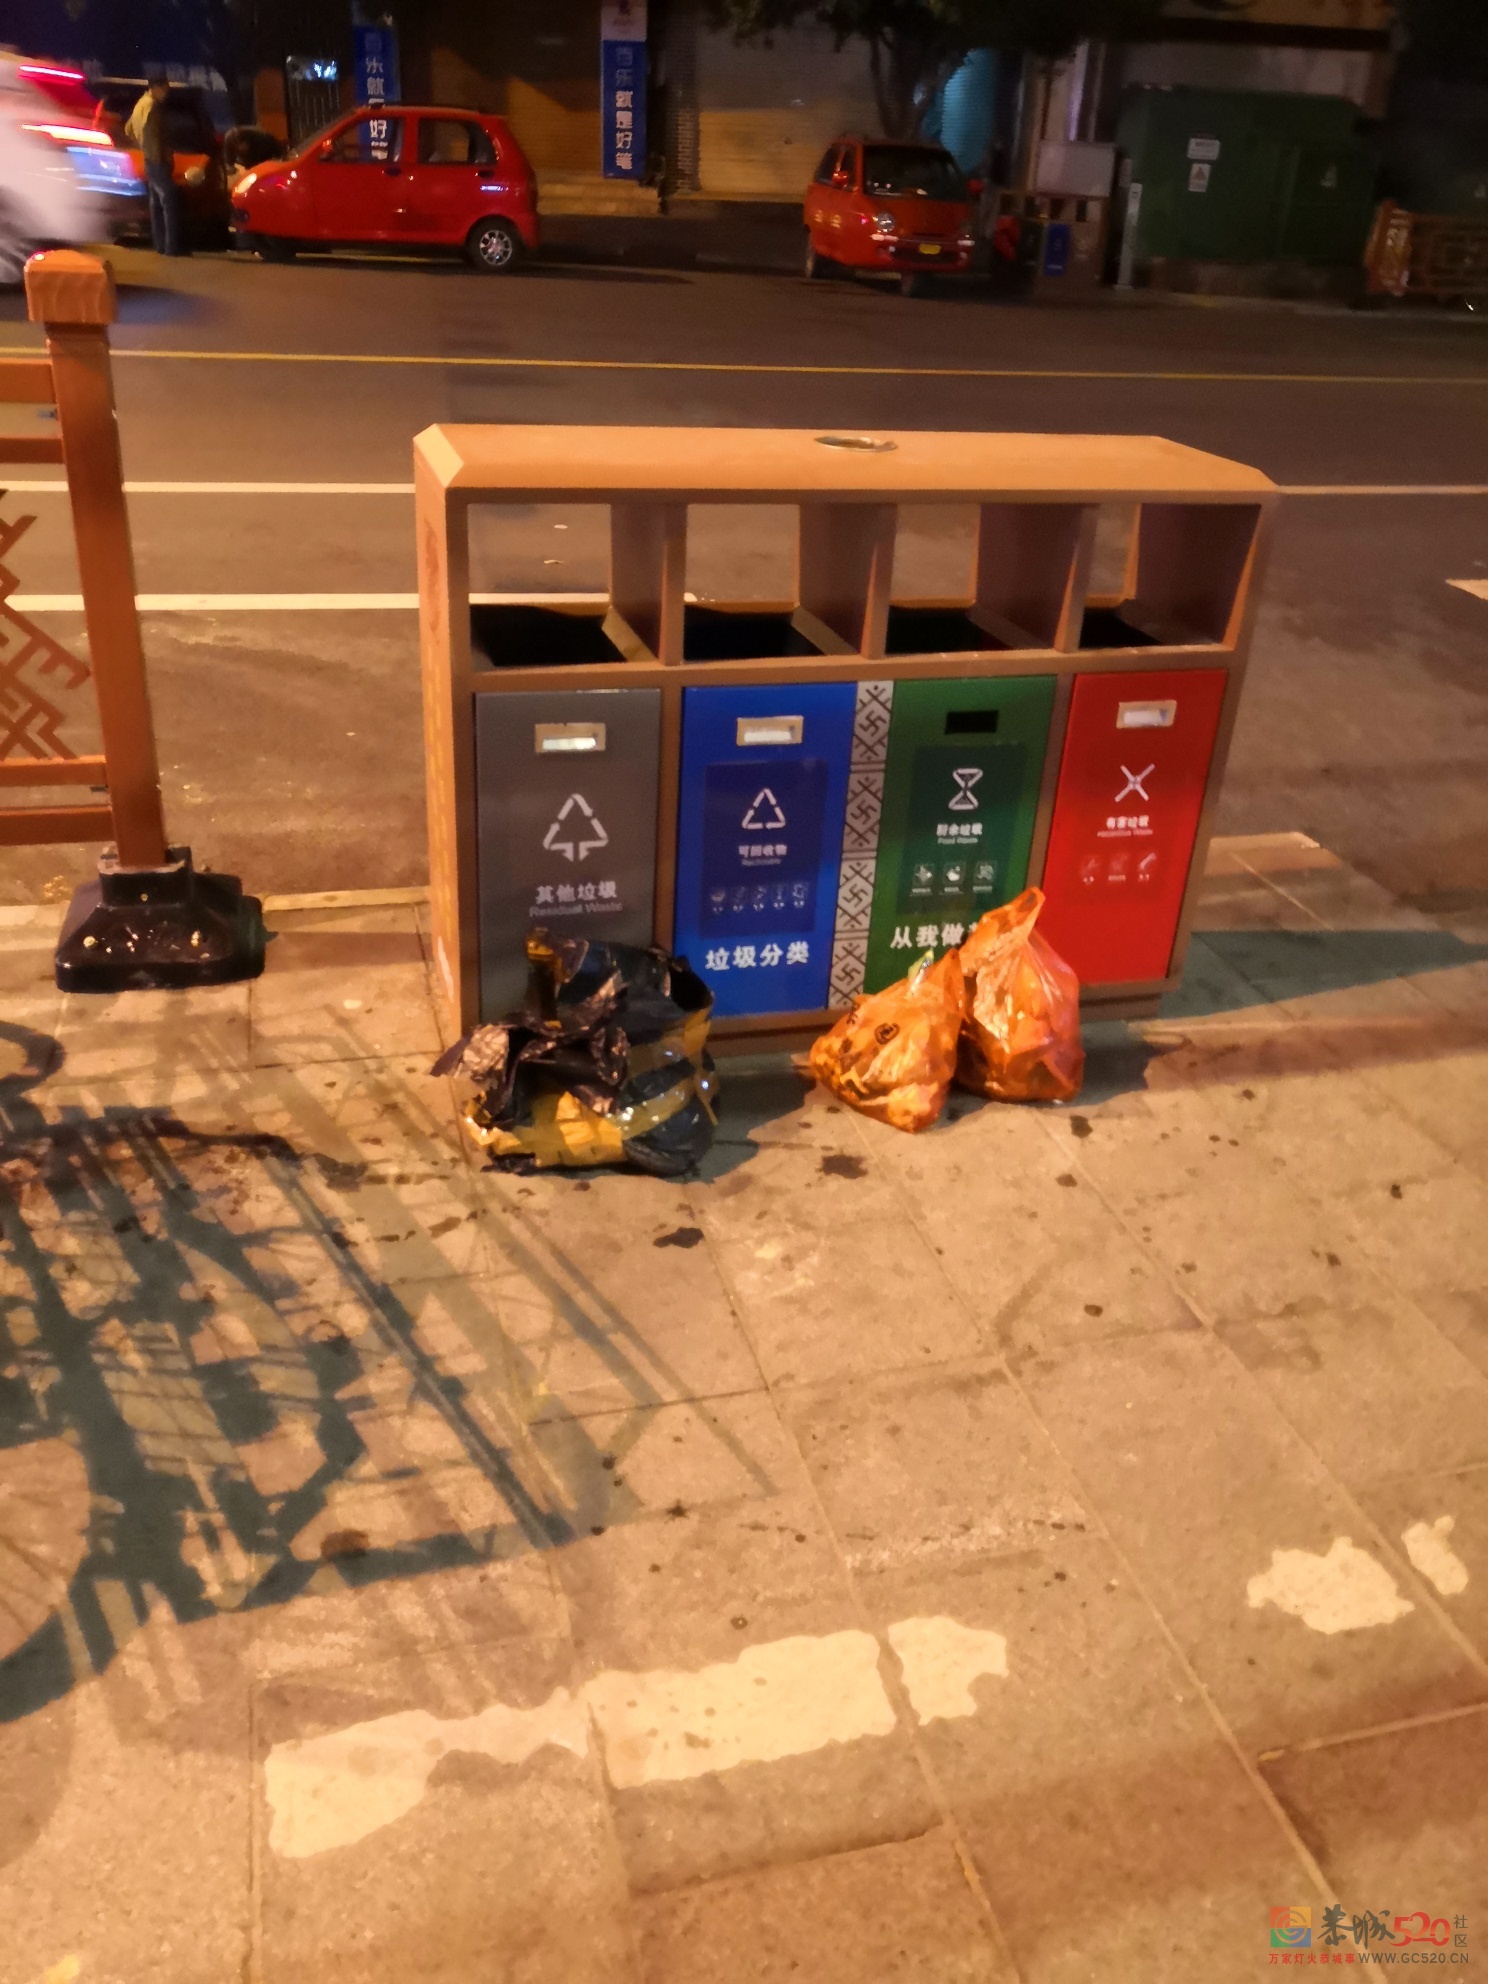 今天晚上在恭城街拍的，为什么垃圾不放垃圾桶里？496 / 作者:猛龙 / 帖子ID:277982